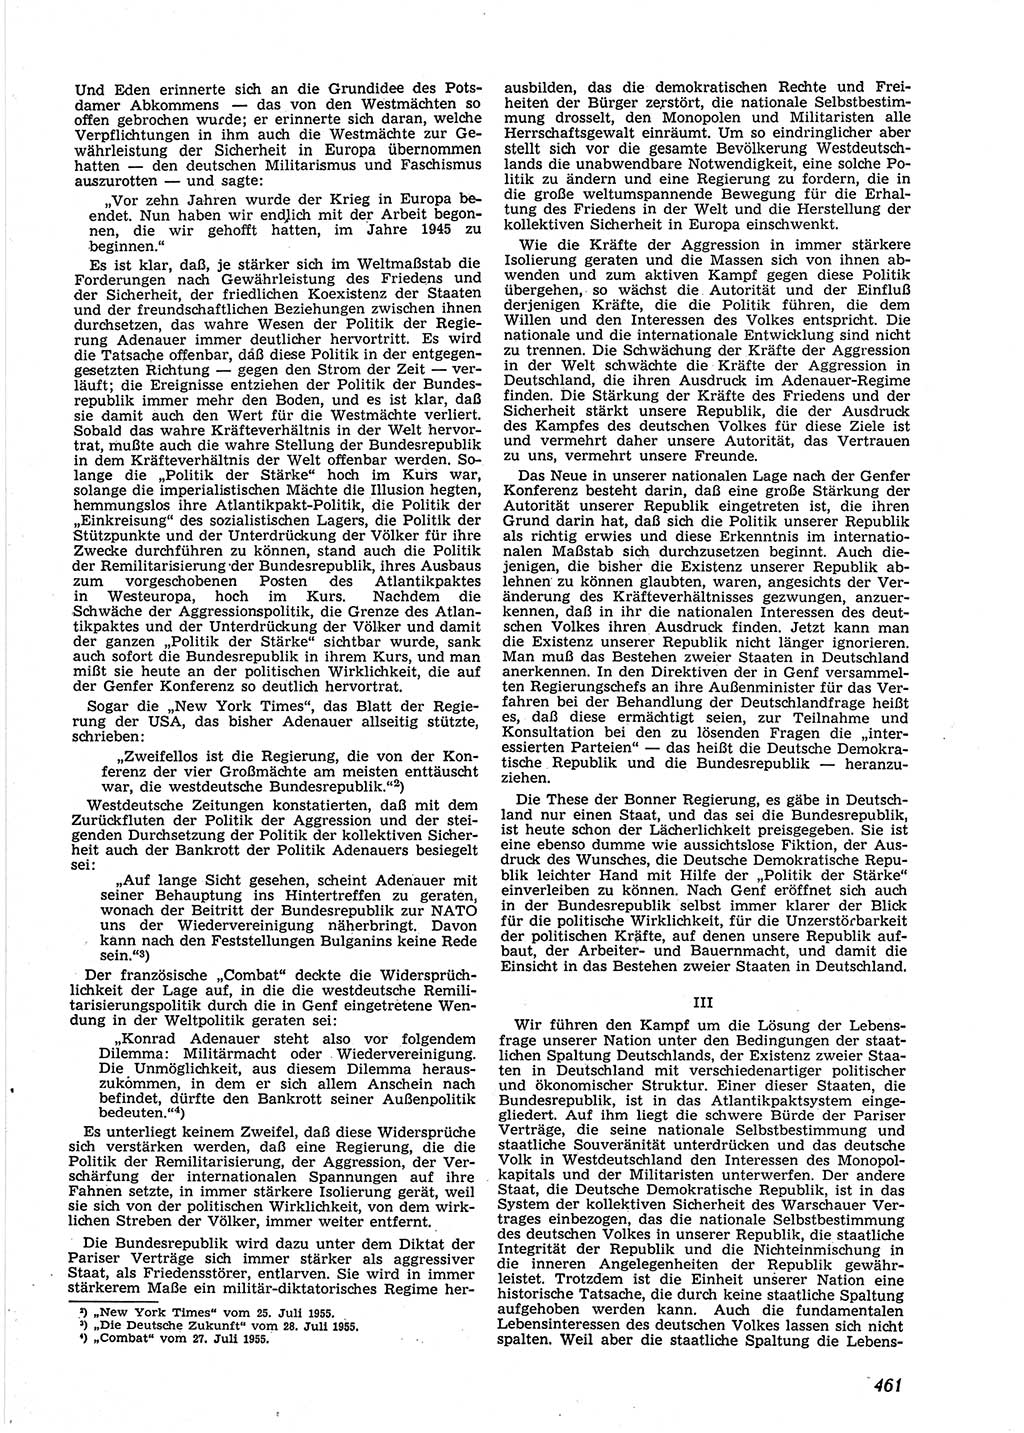 Neue Justiz (NJ), Zeitschrift für Recht und Rechtswissenschaft [Deutsche Demokratische Republik (DDR)], 9. Jahrgang 1955, Seite 461 (NJ DDR 1955, S. 461)